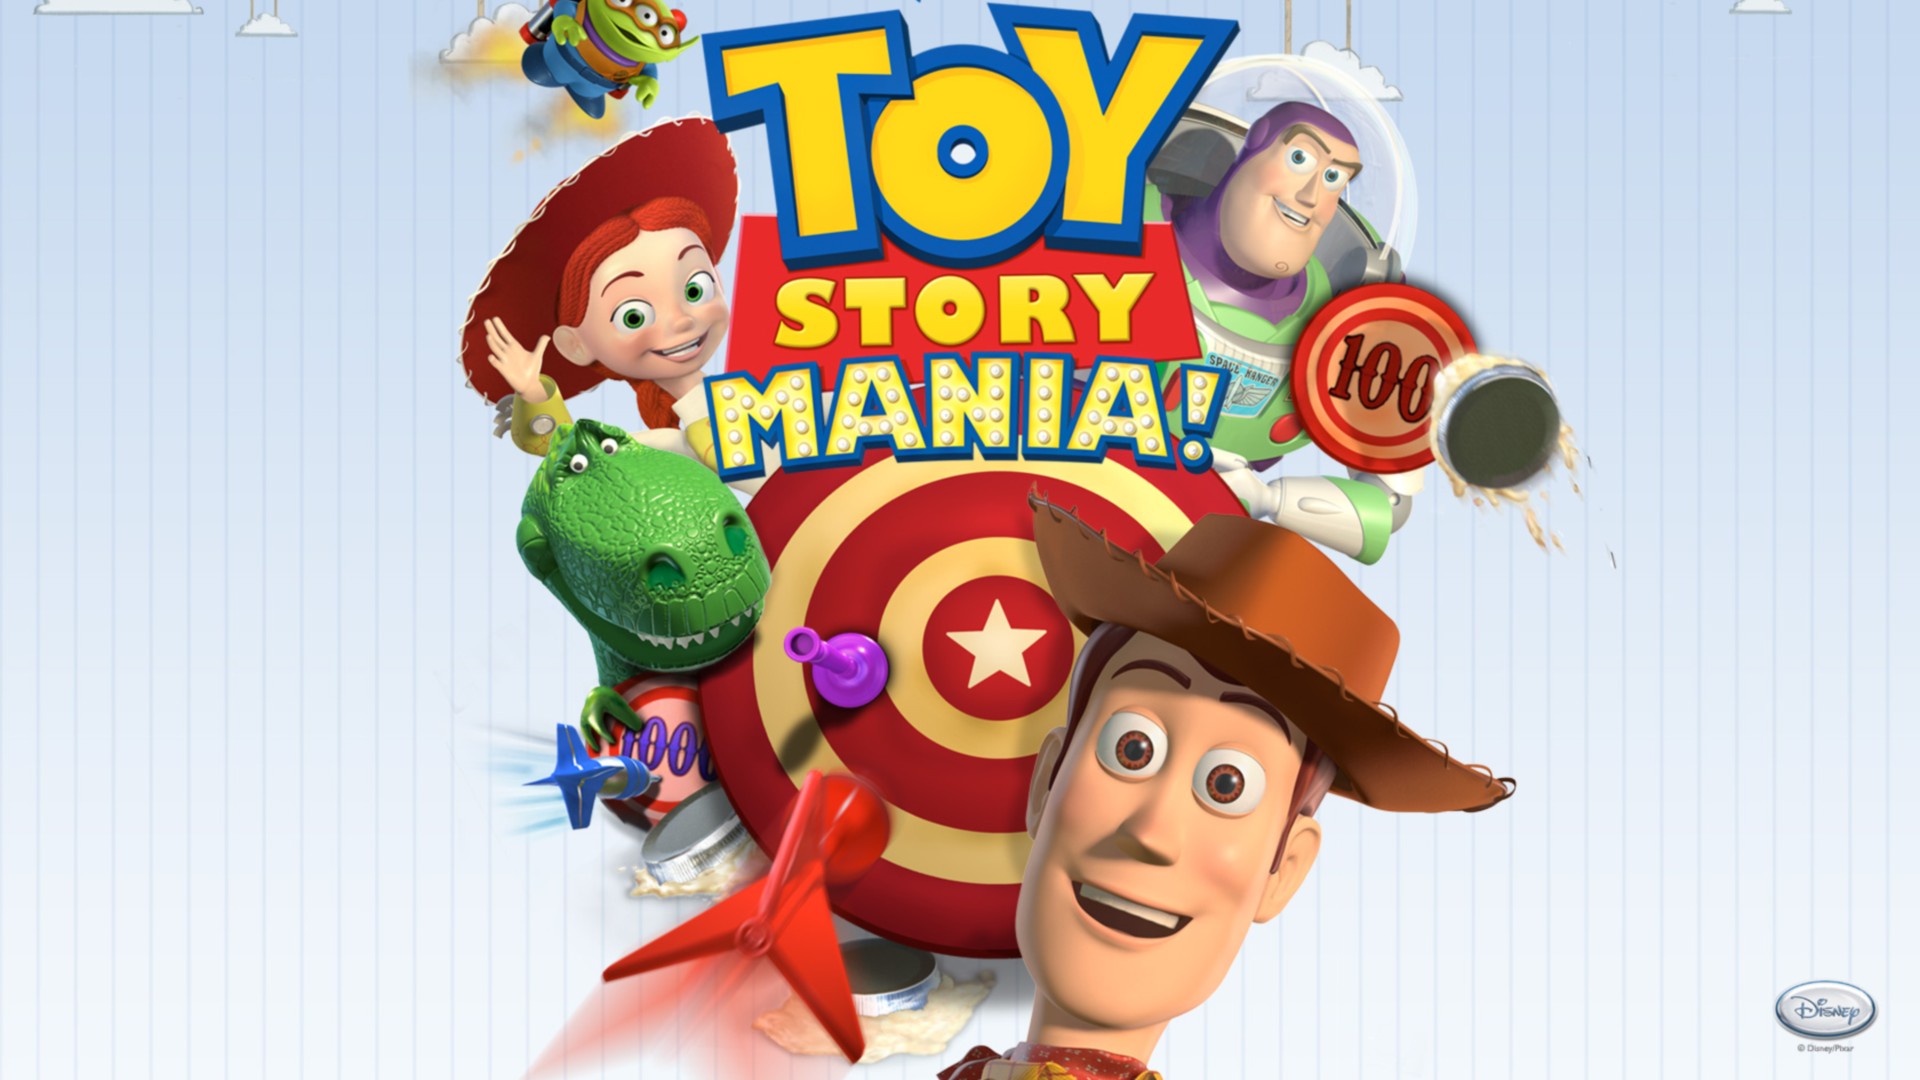 Woody Toy Story Buzz Lightyear Rex Toy Story Jessie Toy Story Aliens Toy Story Toy Story Mania 1920x1080